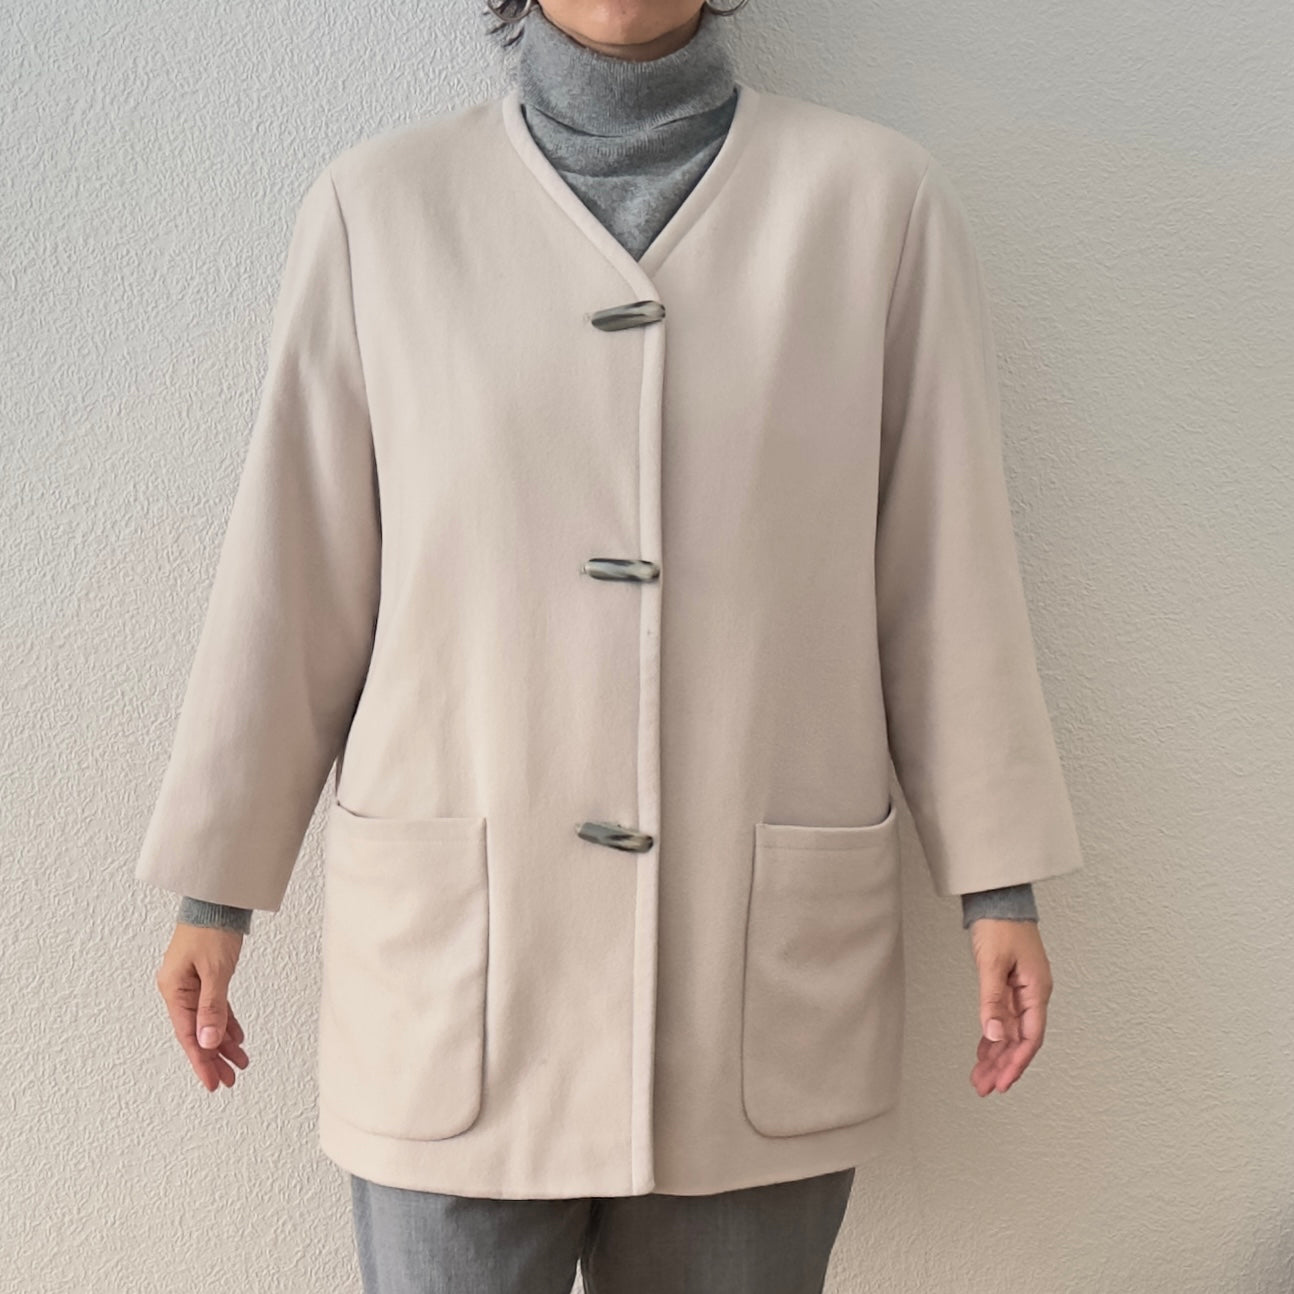 Vintage Wool-Cashmere blend Jacket